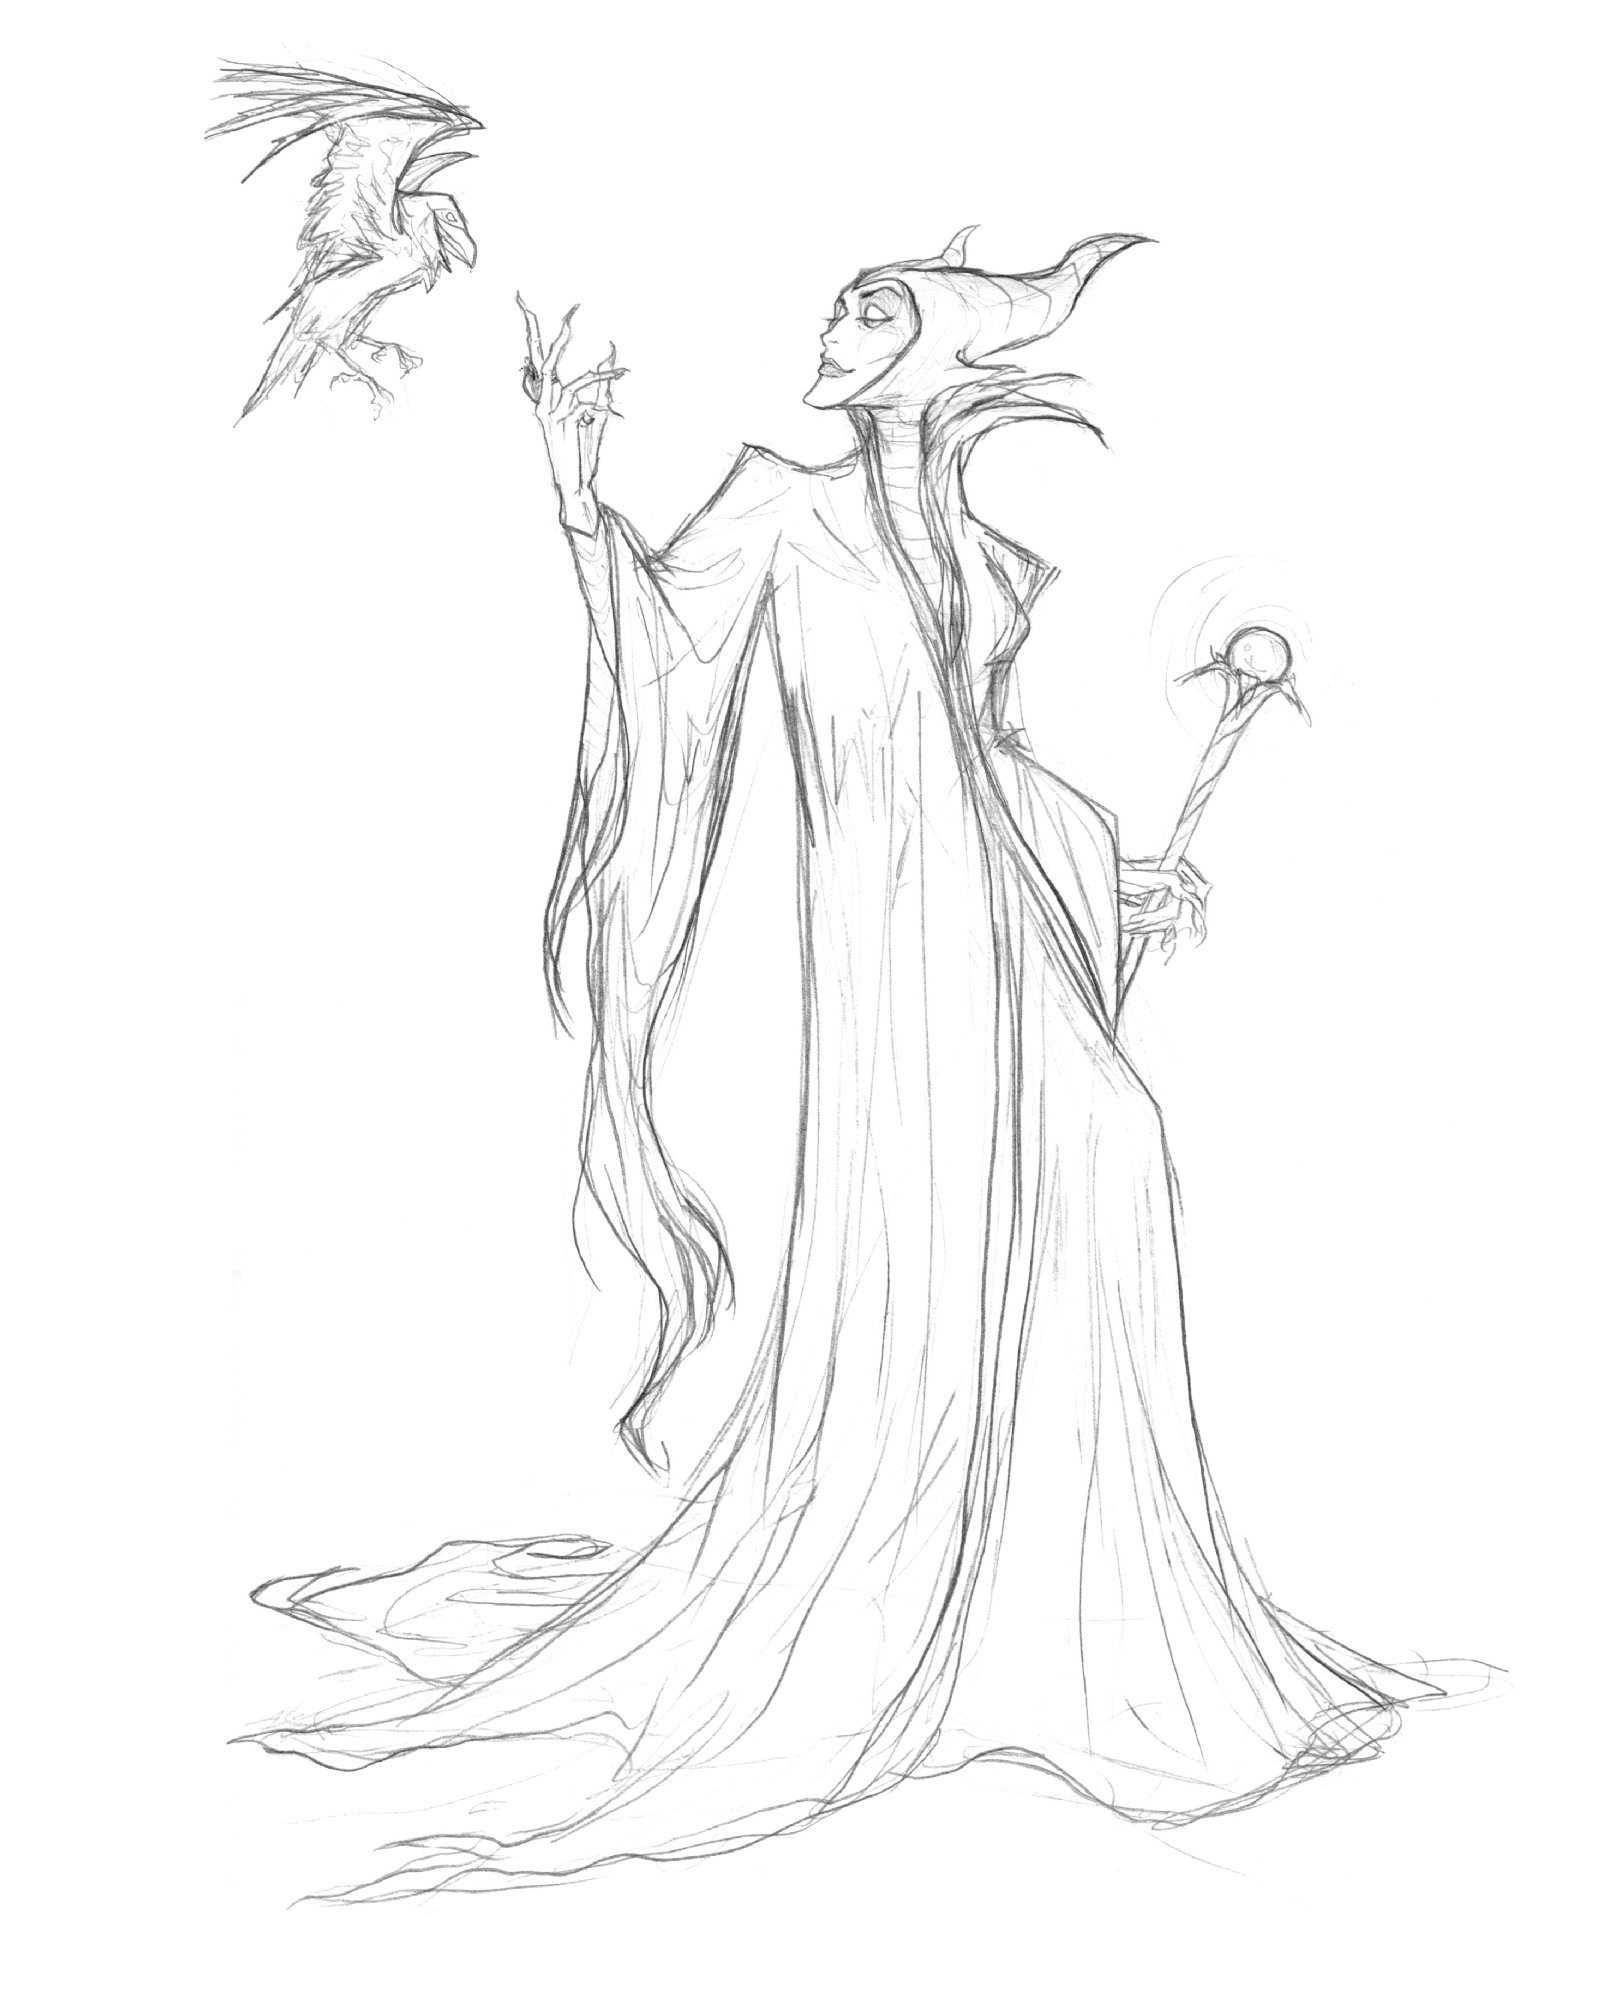 Maleficent-Drawing - Maleficent (2014) Fan Art (37160807) - Fanpop - Page 10